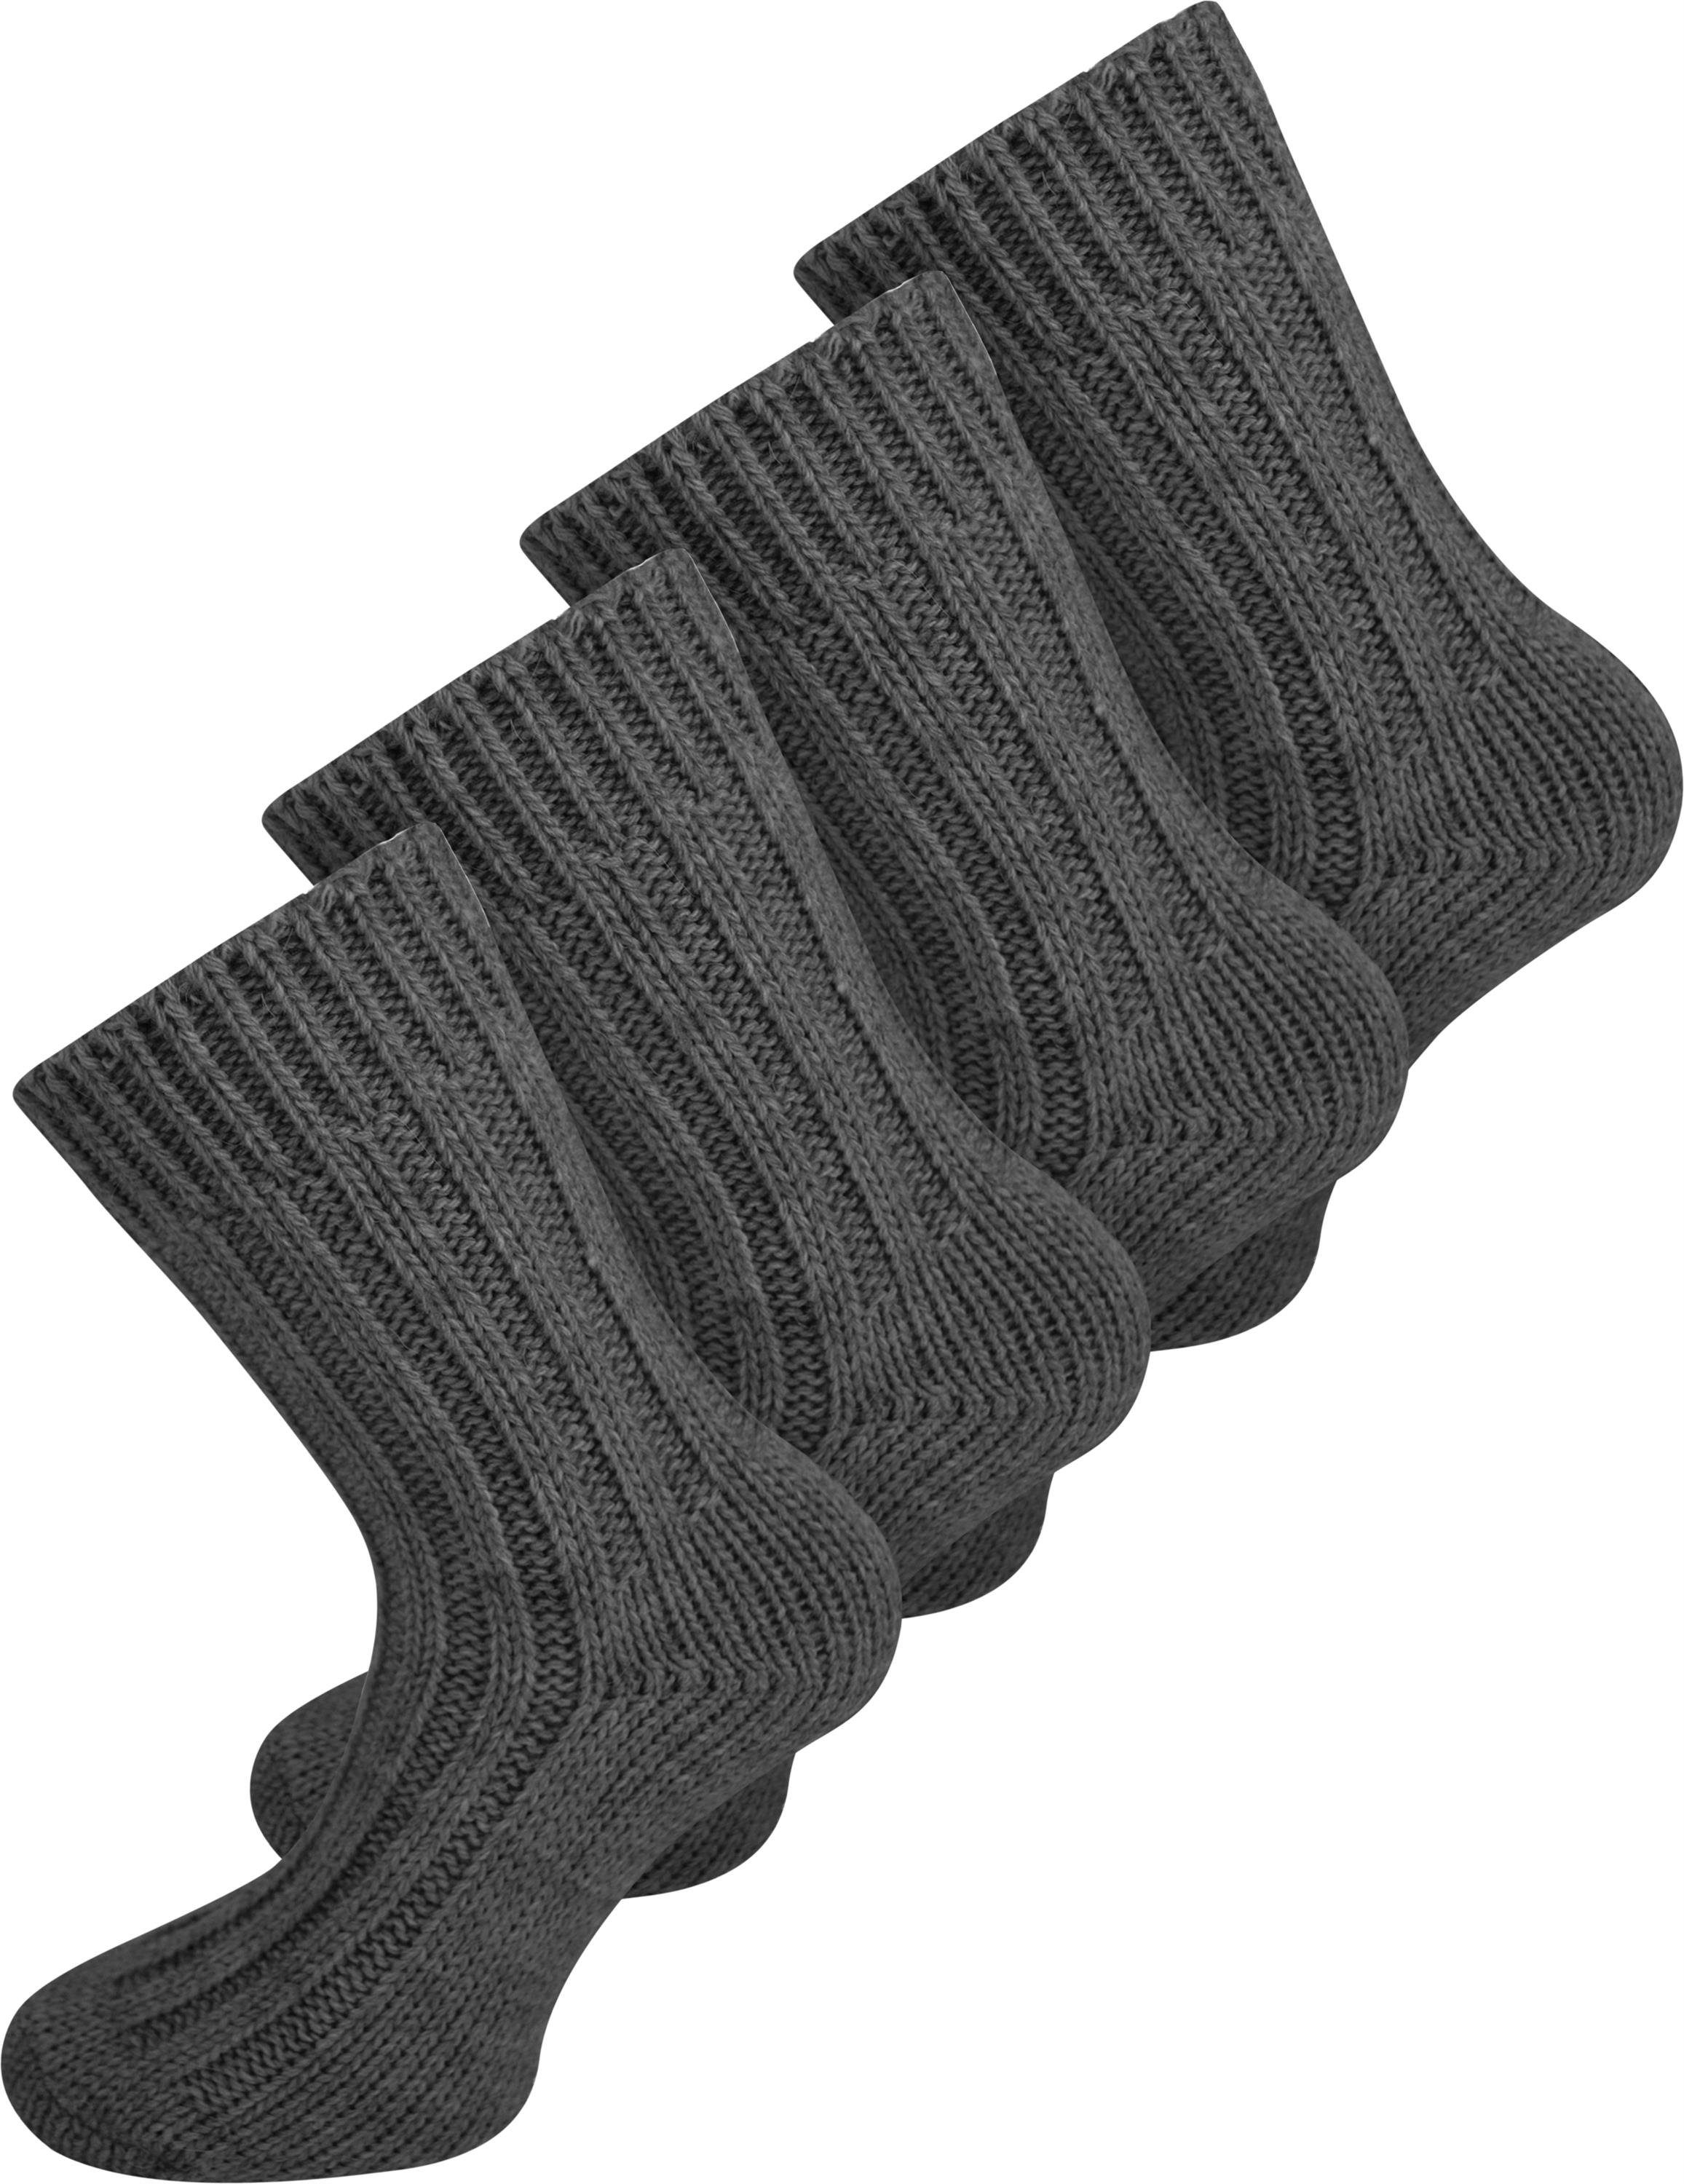 normani Thermosocken 4 Paar Alpaka-Wolle Alpaka-Socken (4 Paar) hochwertige Anthrazit